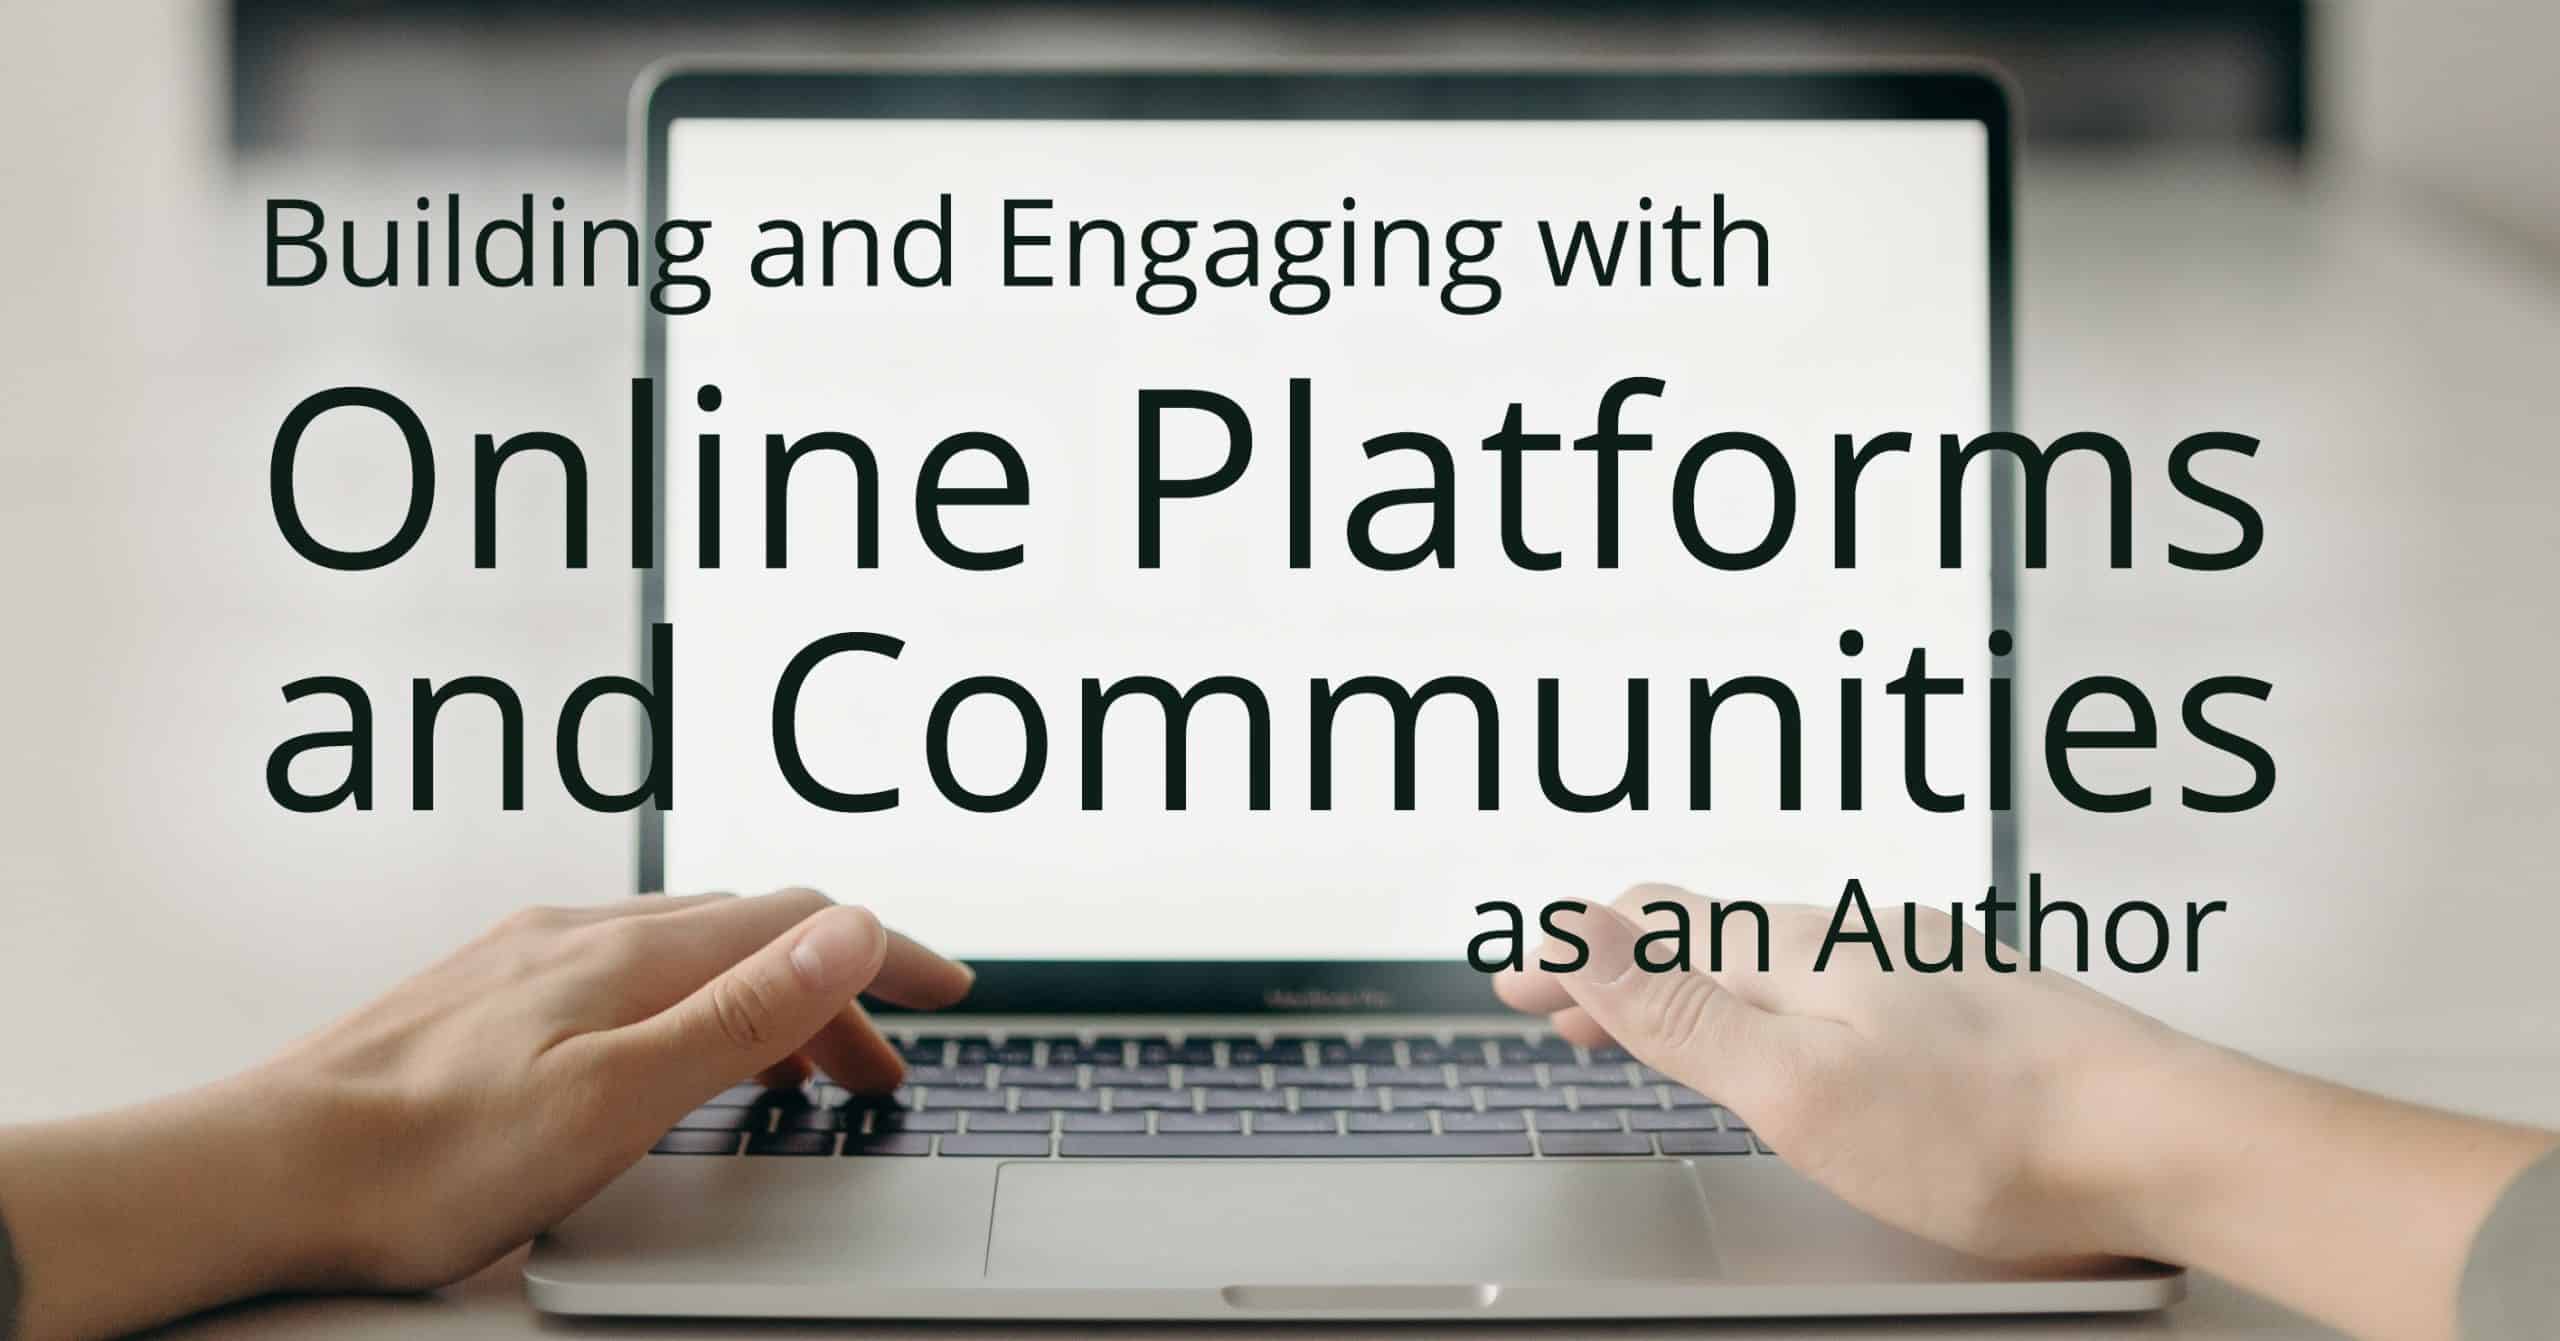 building author platform online community